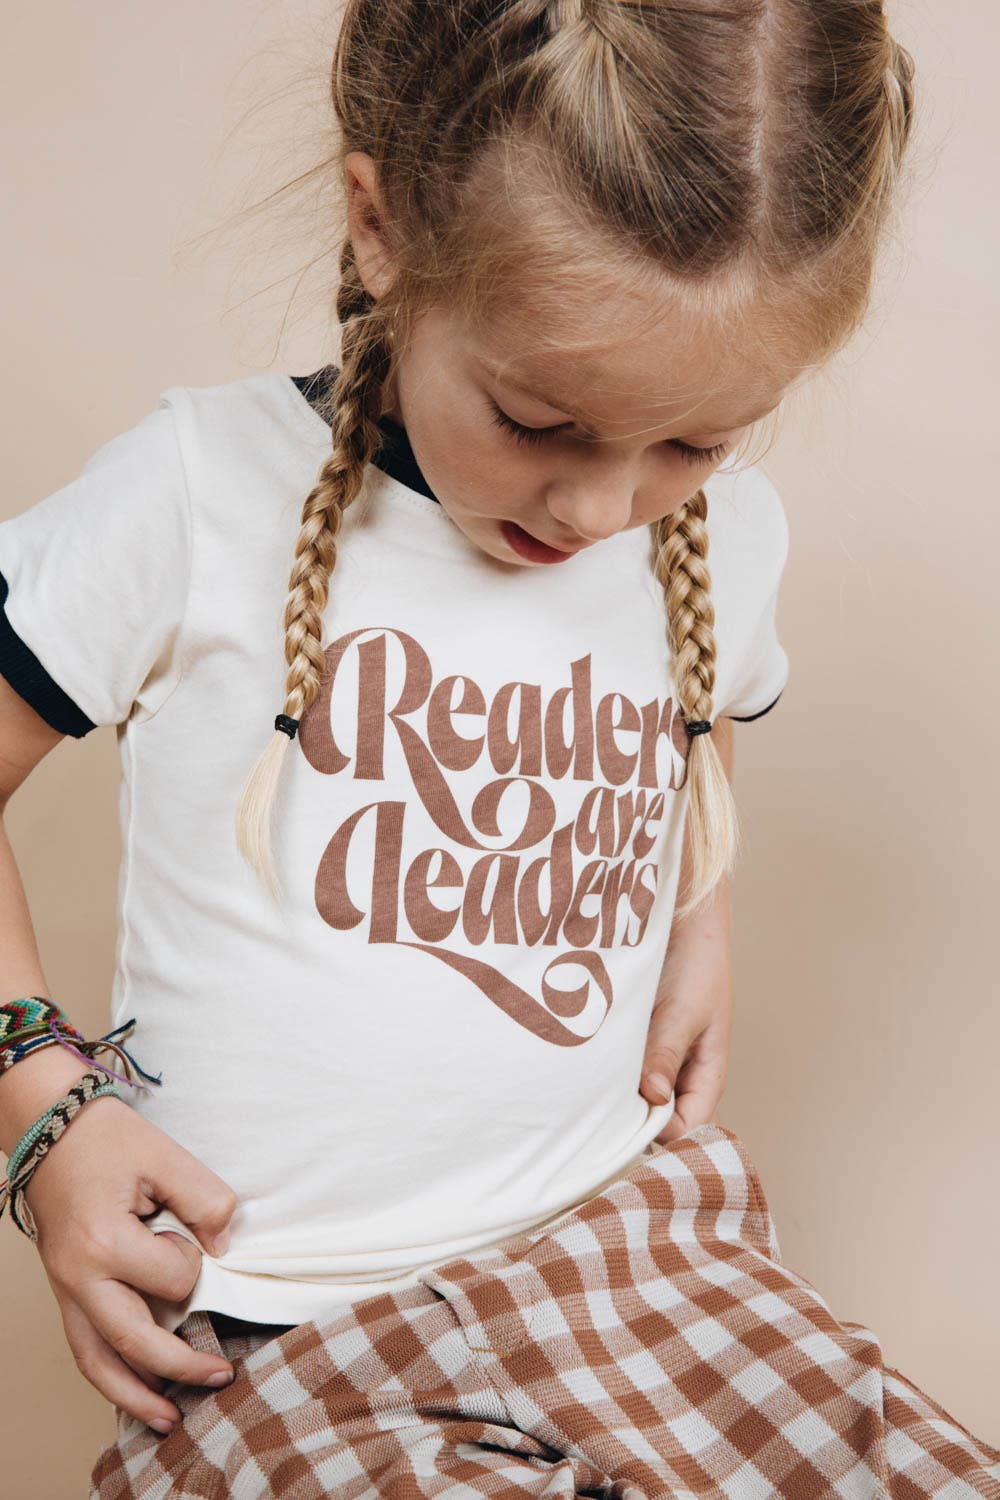 Readers are Leaders Kids Tee Shirt